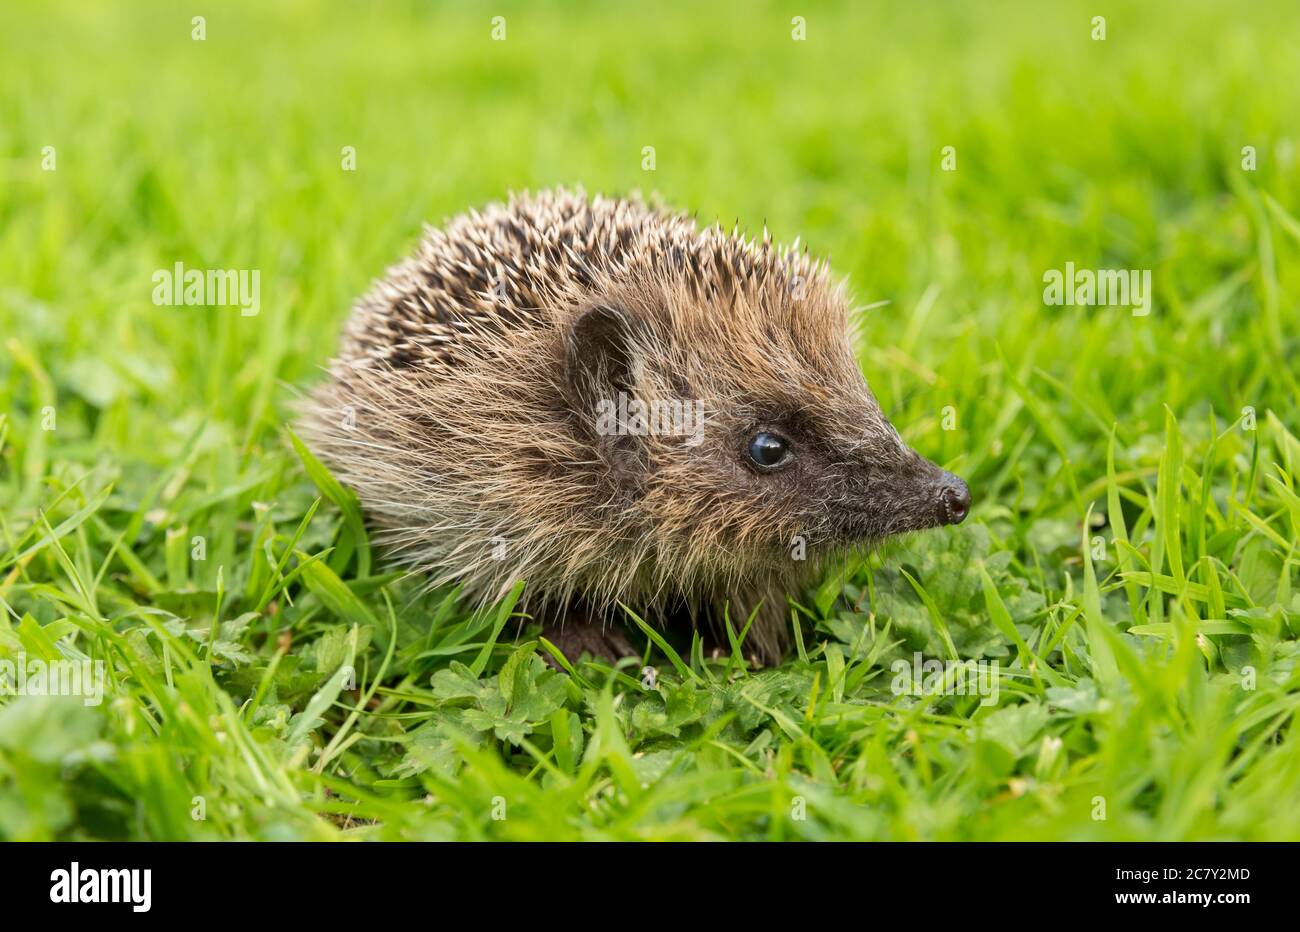 Hedgehog (nome scientifico o latino: Erinaceus Europaeus). Un giovane selvatico, hedgehog europeo che foraggi in habitat naturale del giardino. Rivolto a destra. Foto Stock